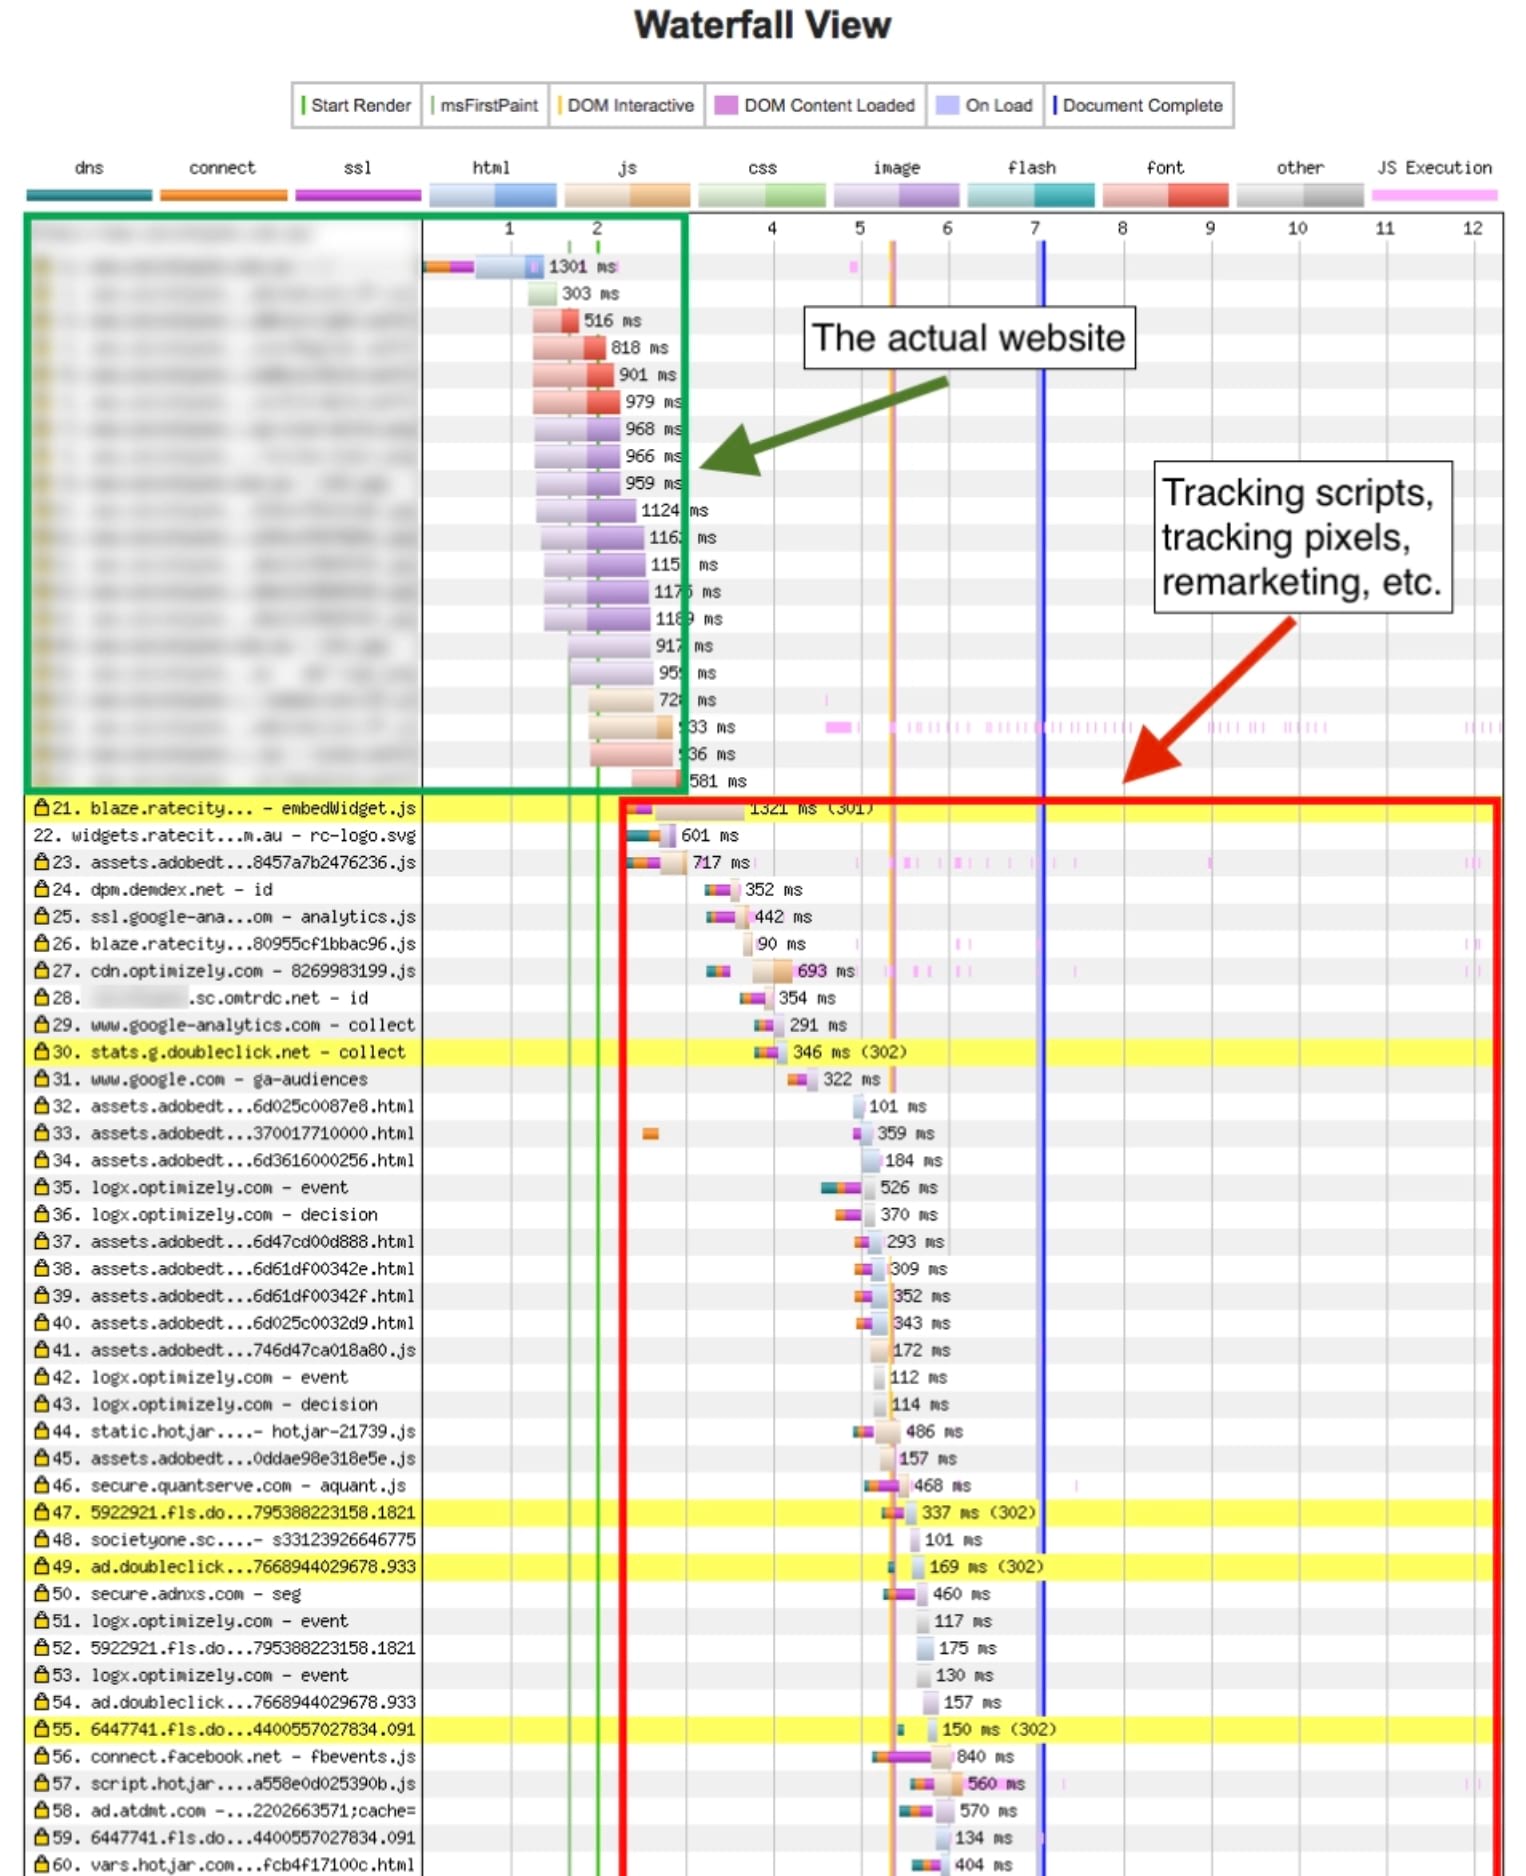 visualizzazione a cascata del test delle pagine web che mostra
un sito web effettivo rispetto al tempo impiegato per caricare gli script